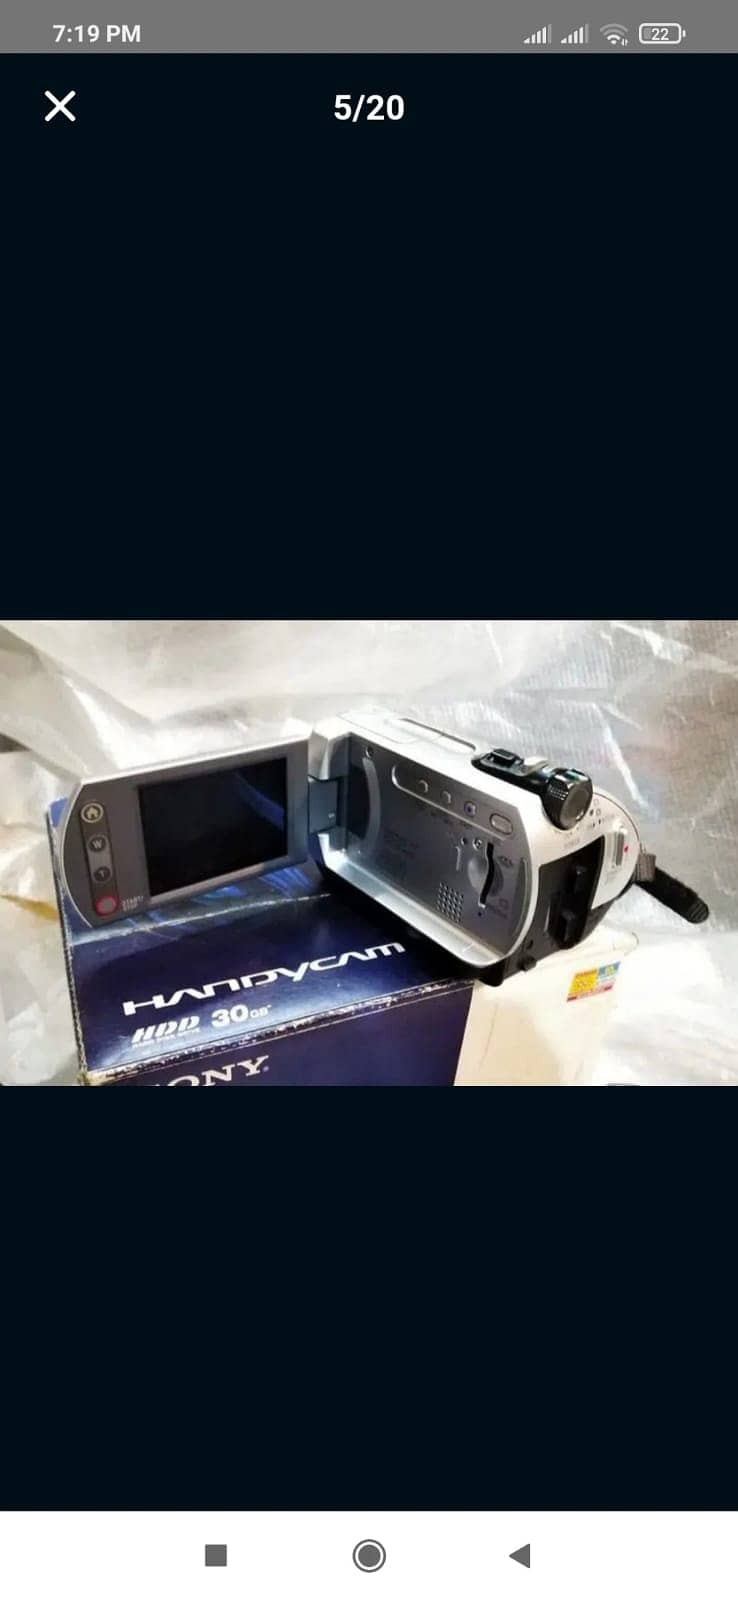 Sony Handycam DCR-SR32E 5